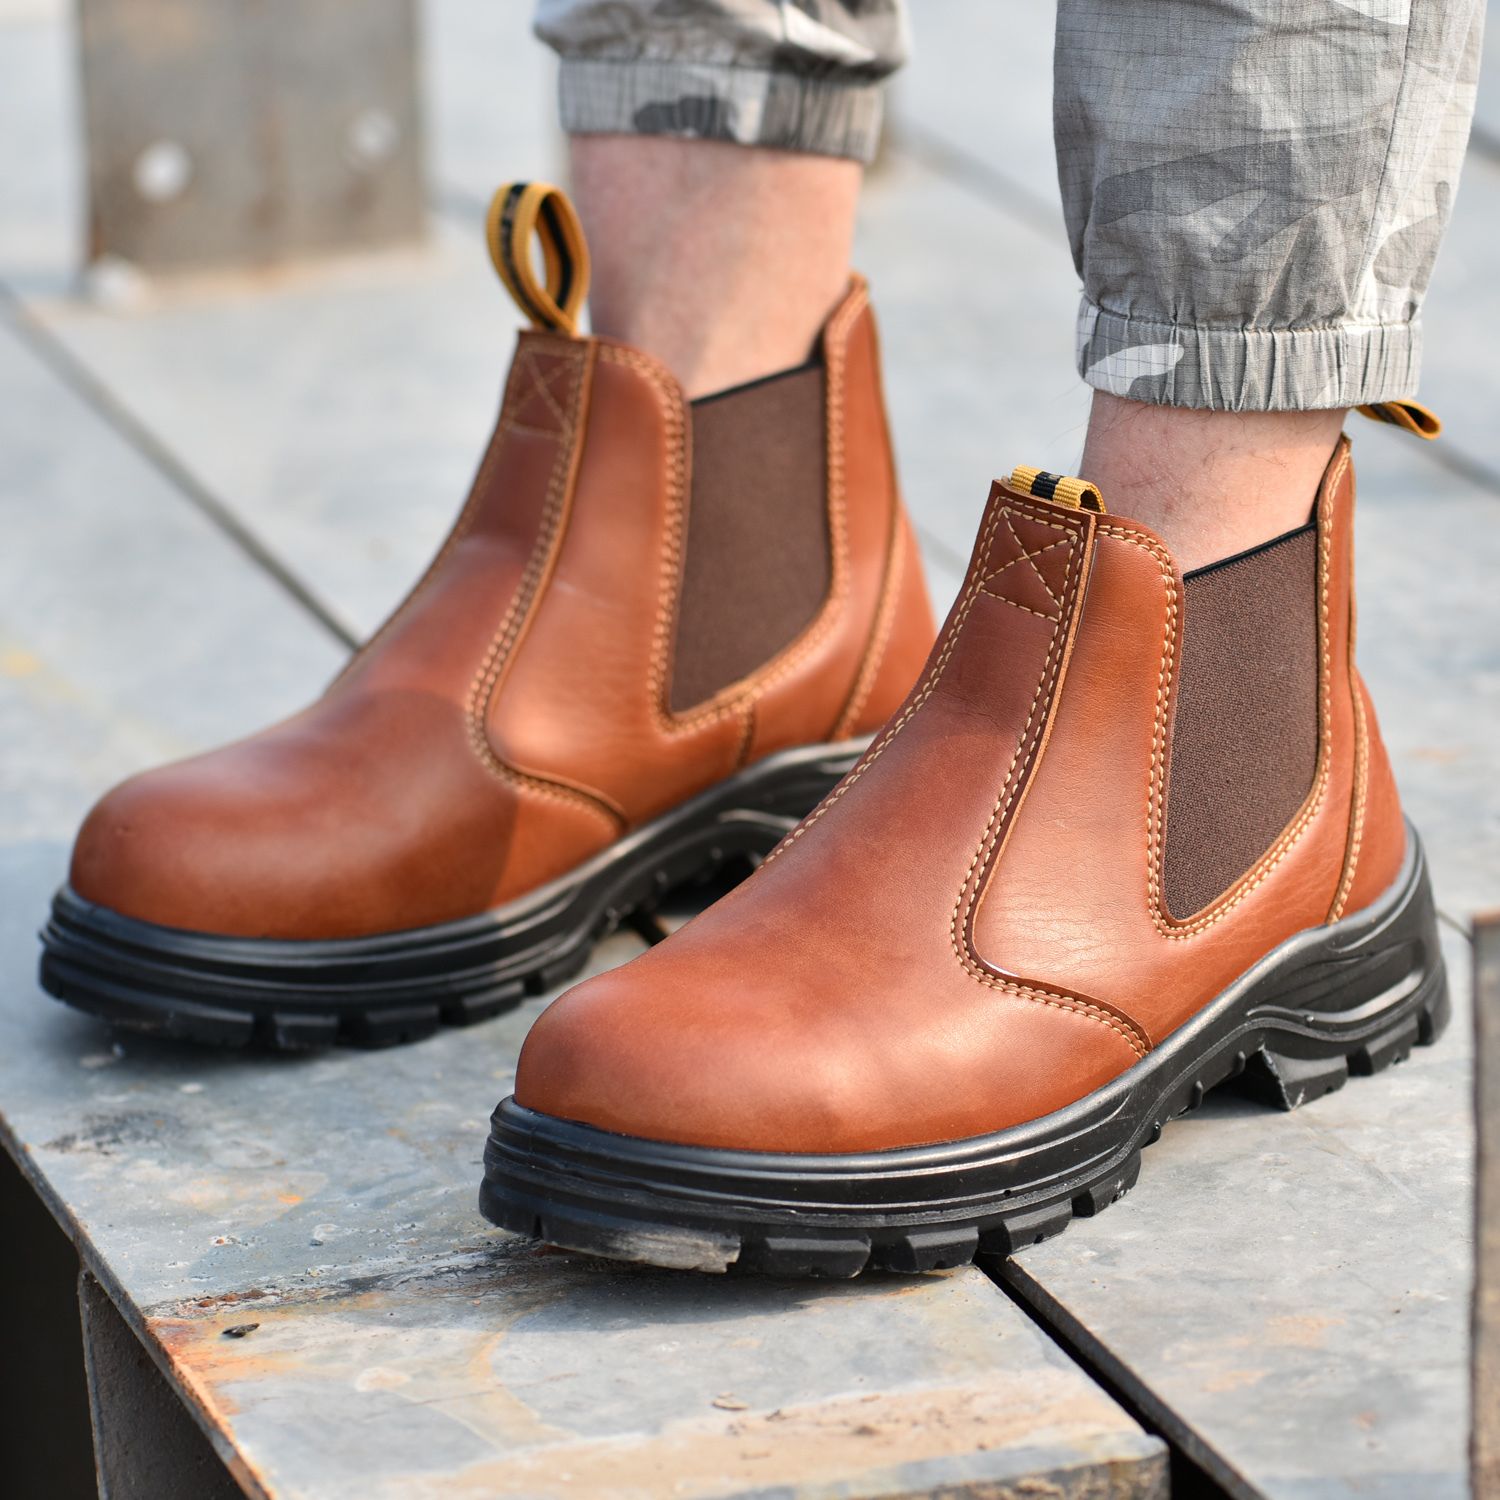 Safetoe Hombres impermeables botas seguridad con tapa de punta de acero, zapatos de seguridad